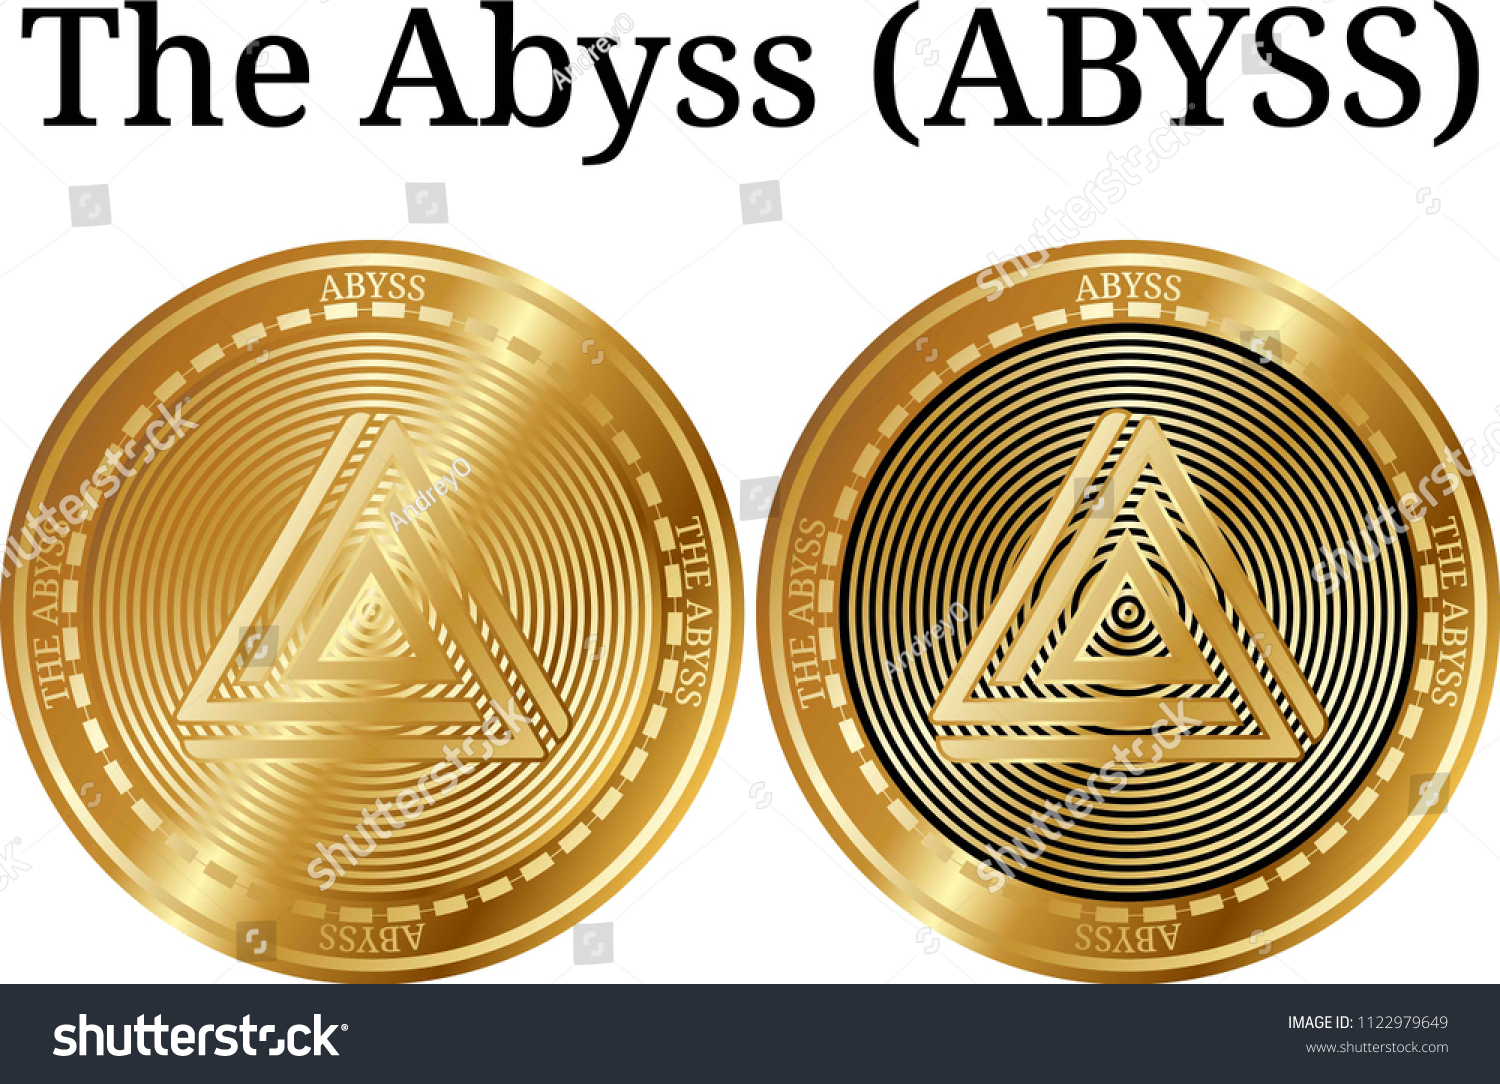 Abyss coin adalah